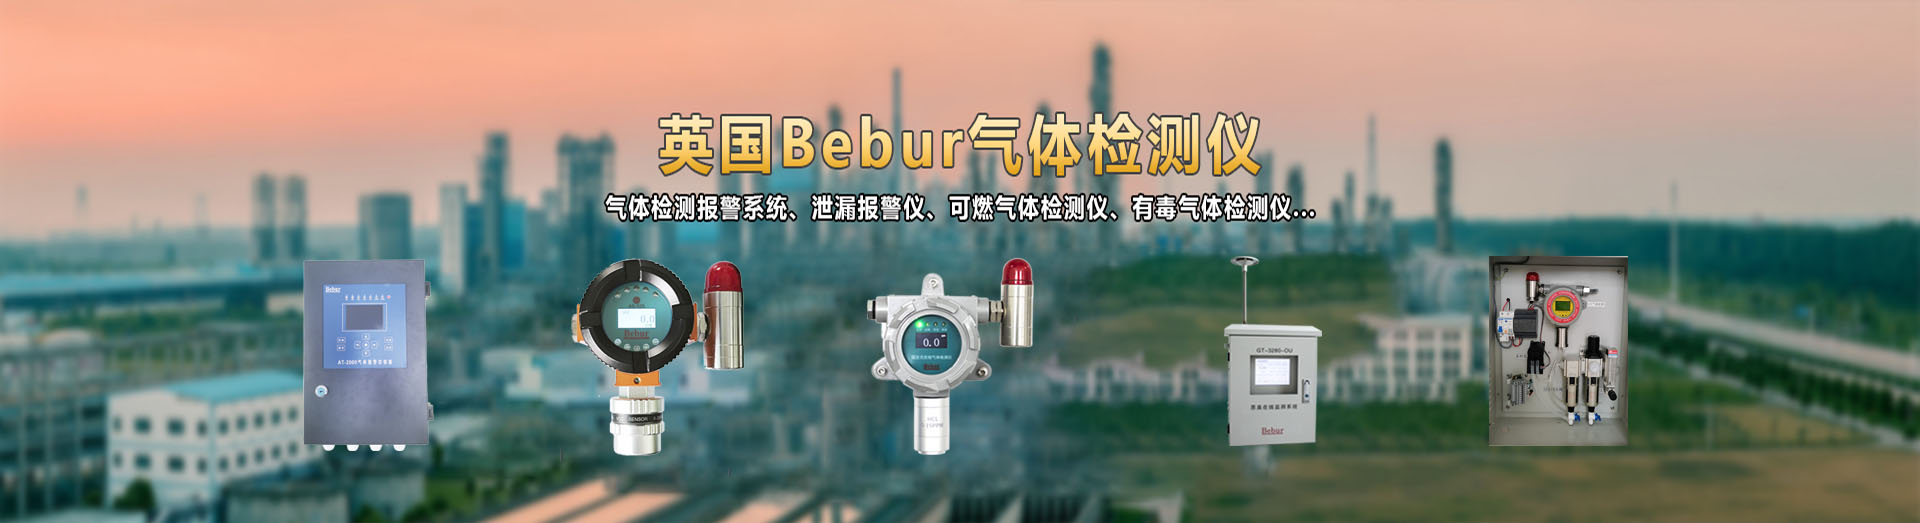 Bebur(巴贝尔)在线臭氧浓度检测仪系列产品